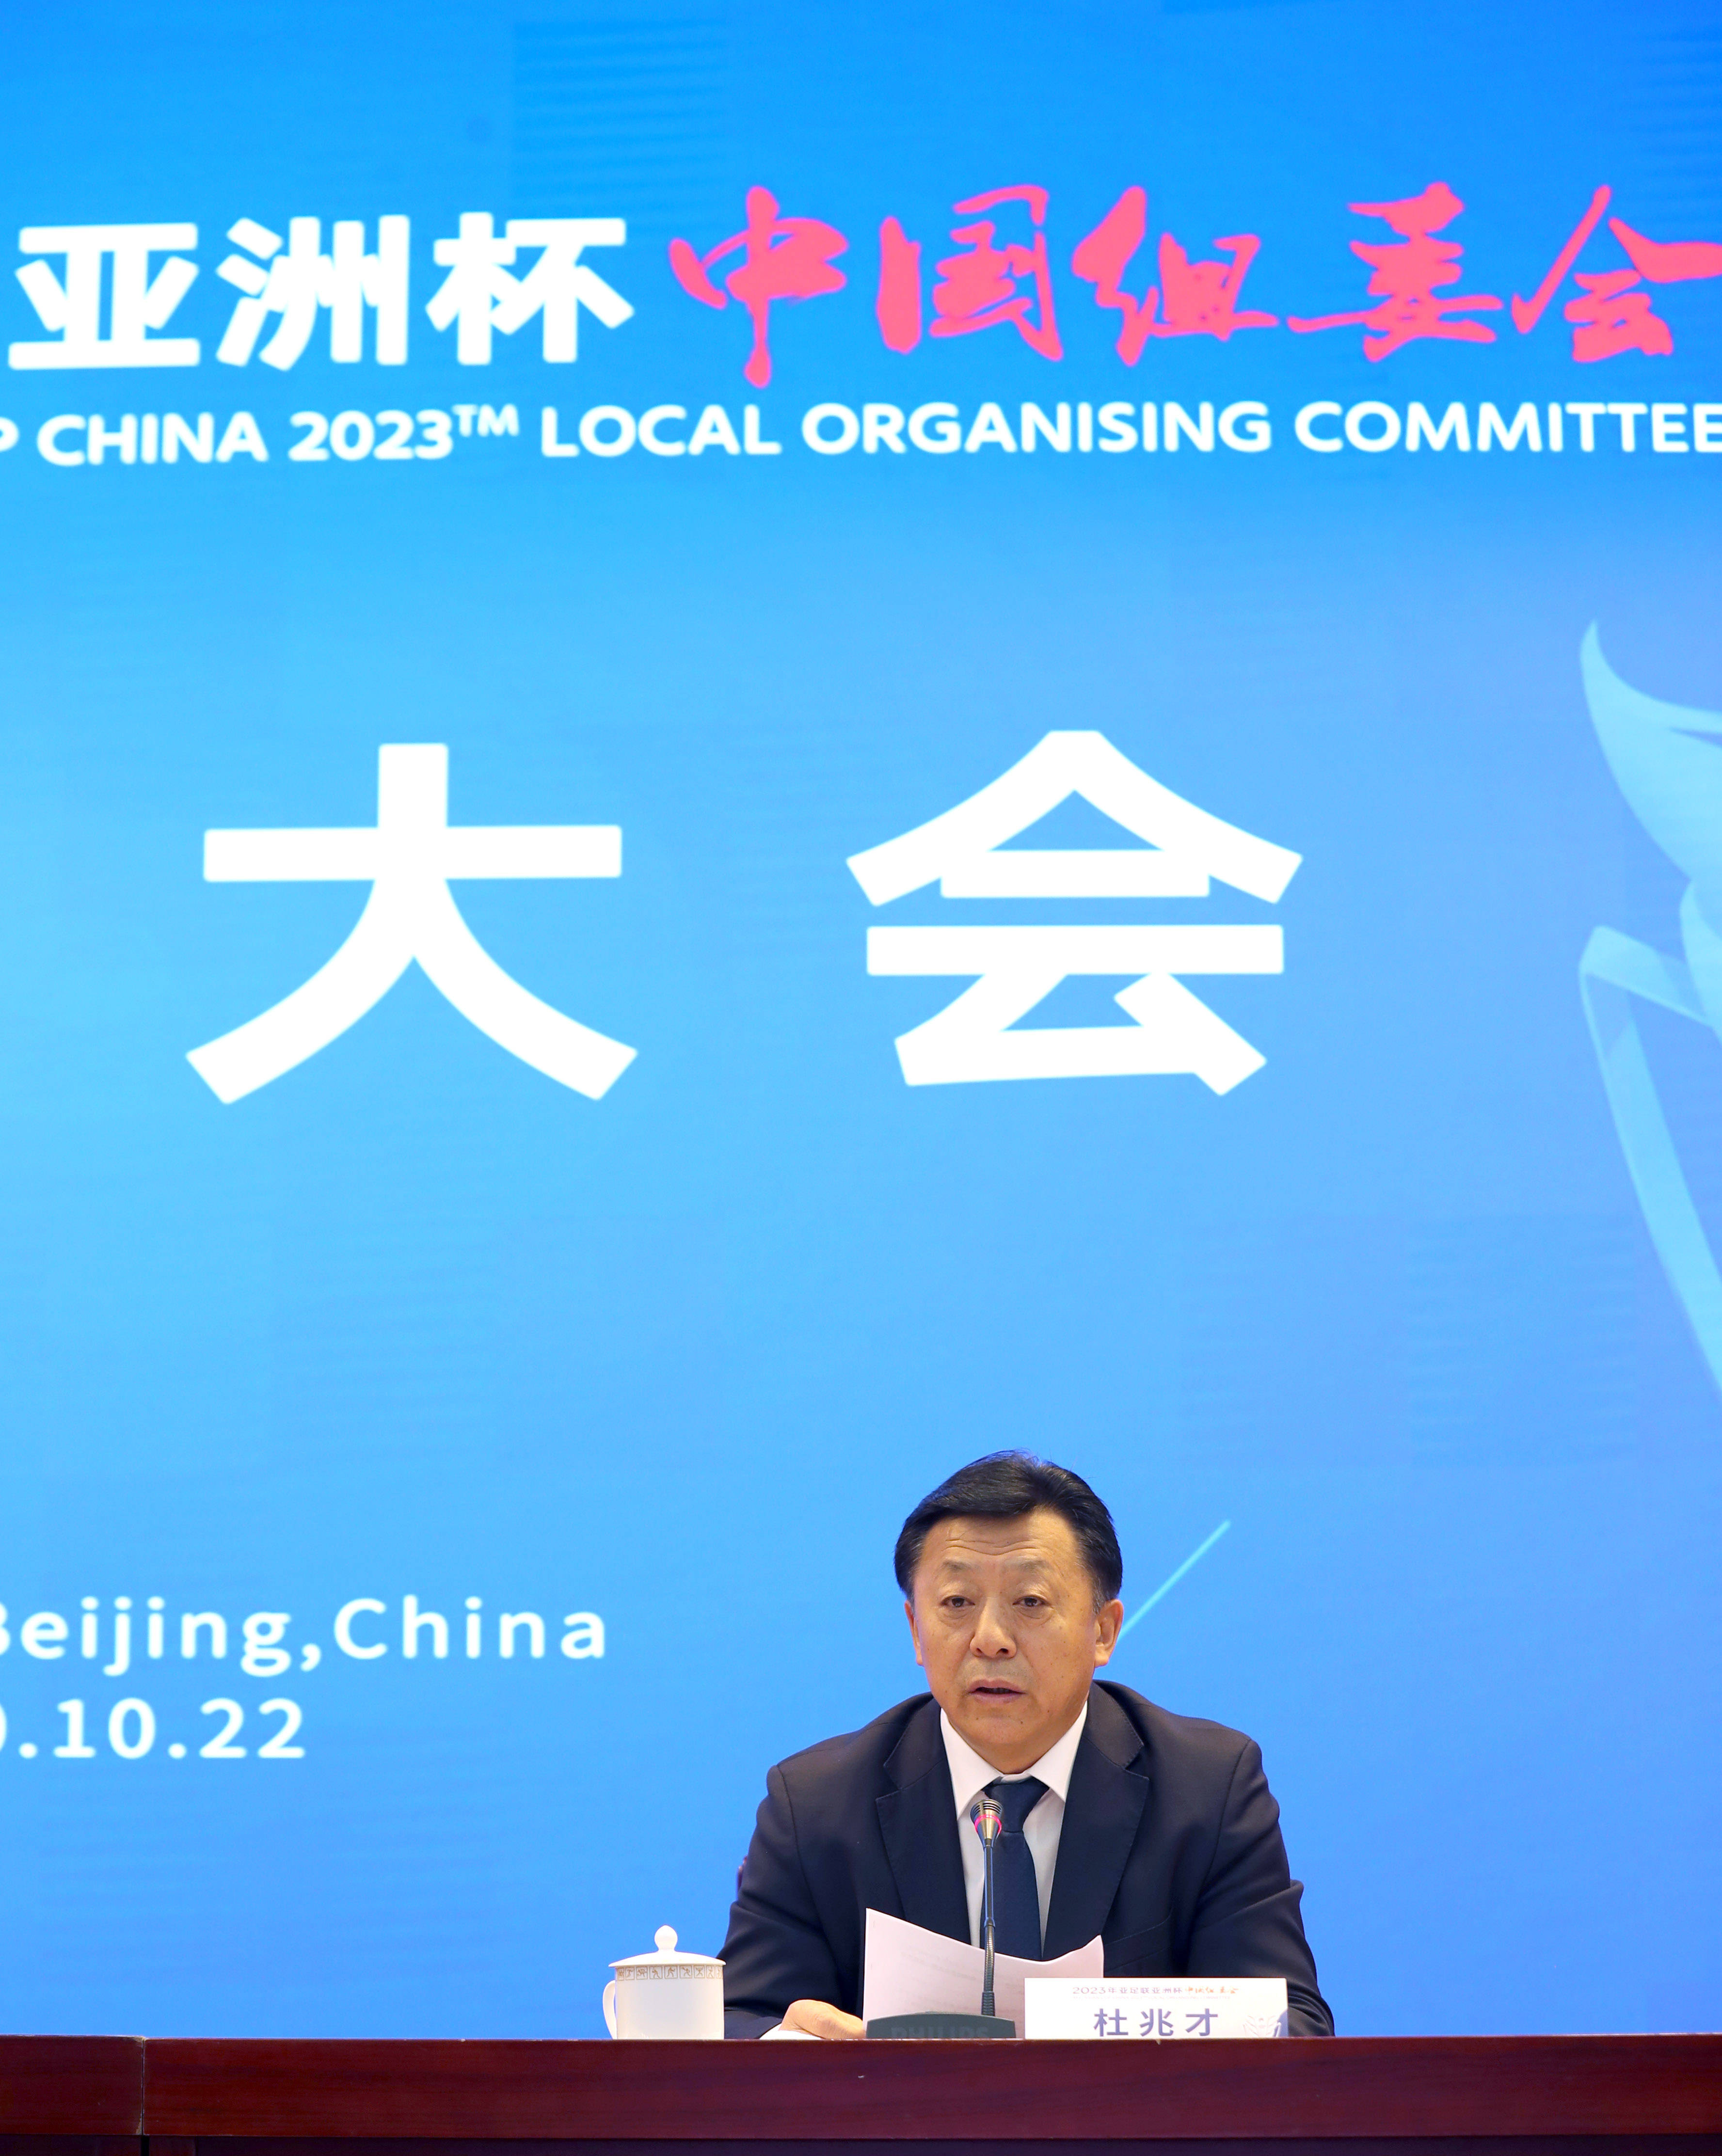 下面是北京申办2022年世界冬奥会_中国冬奥会2022_中国2022世界杯